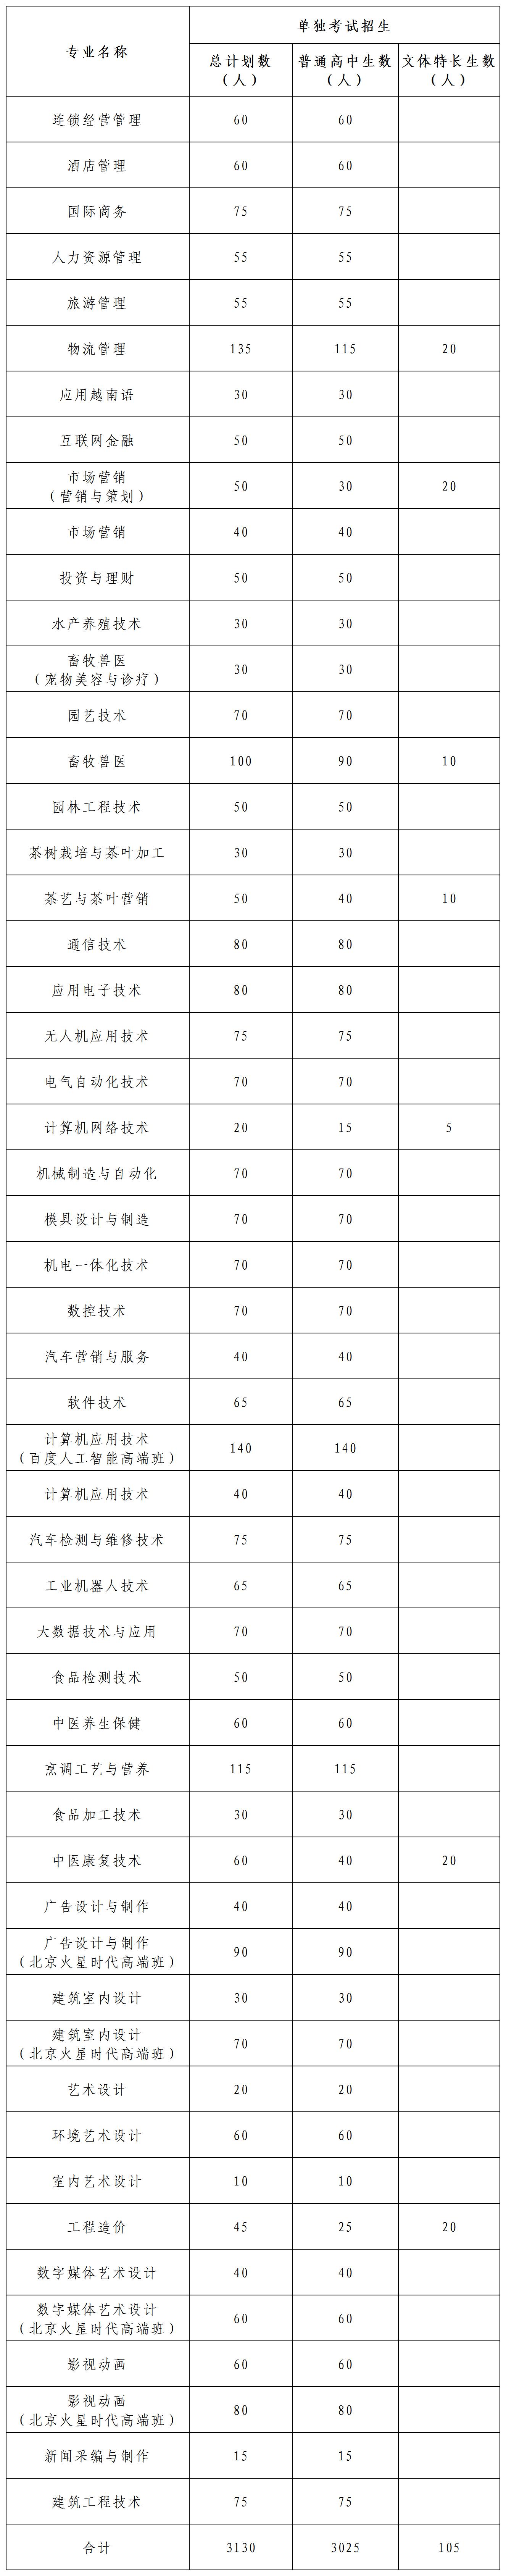 广西职业技术学院2020年单独考试招生简章